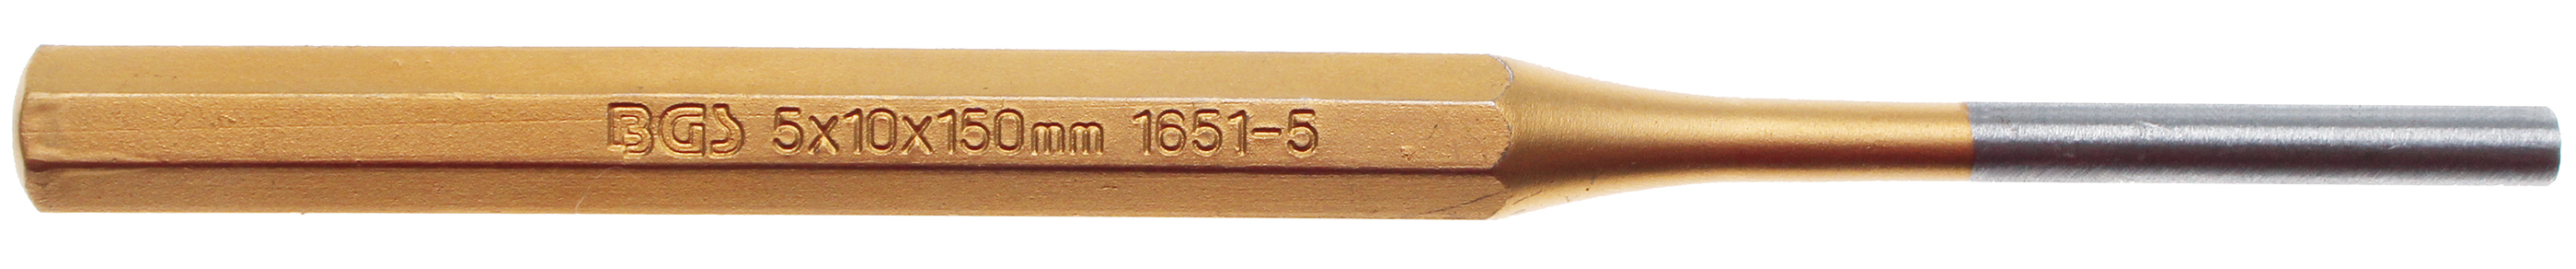 BGS 1651-5 Dorn 5 mm pentru mecanici, lungime 150 mm